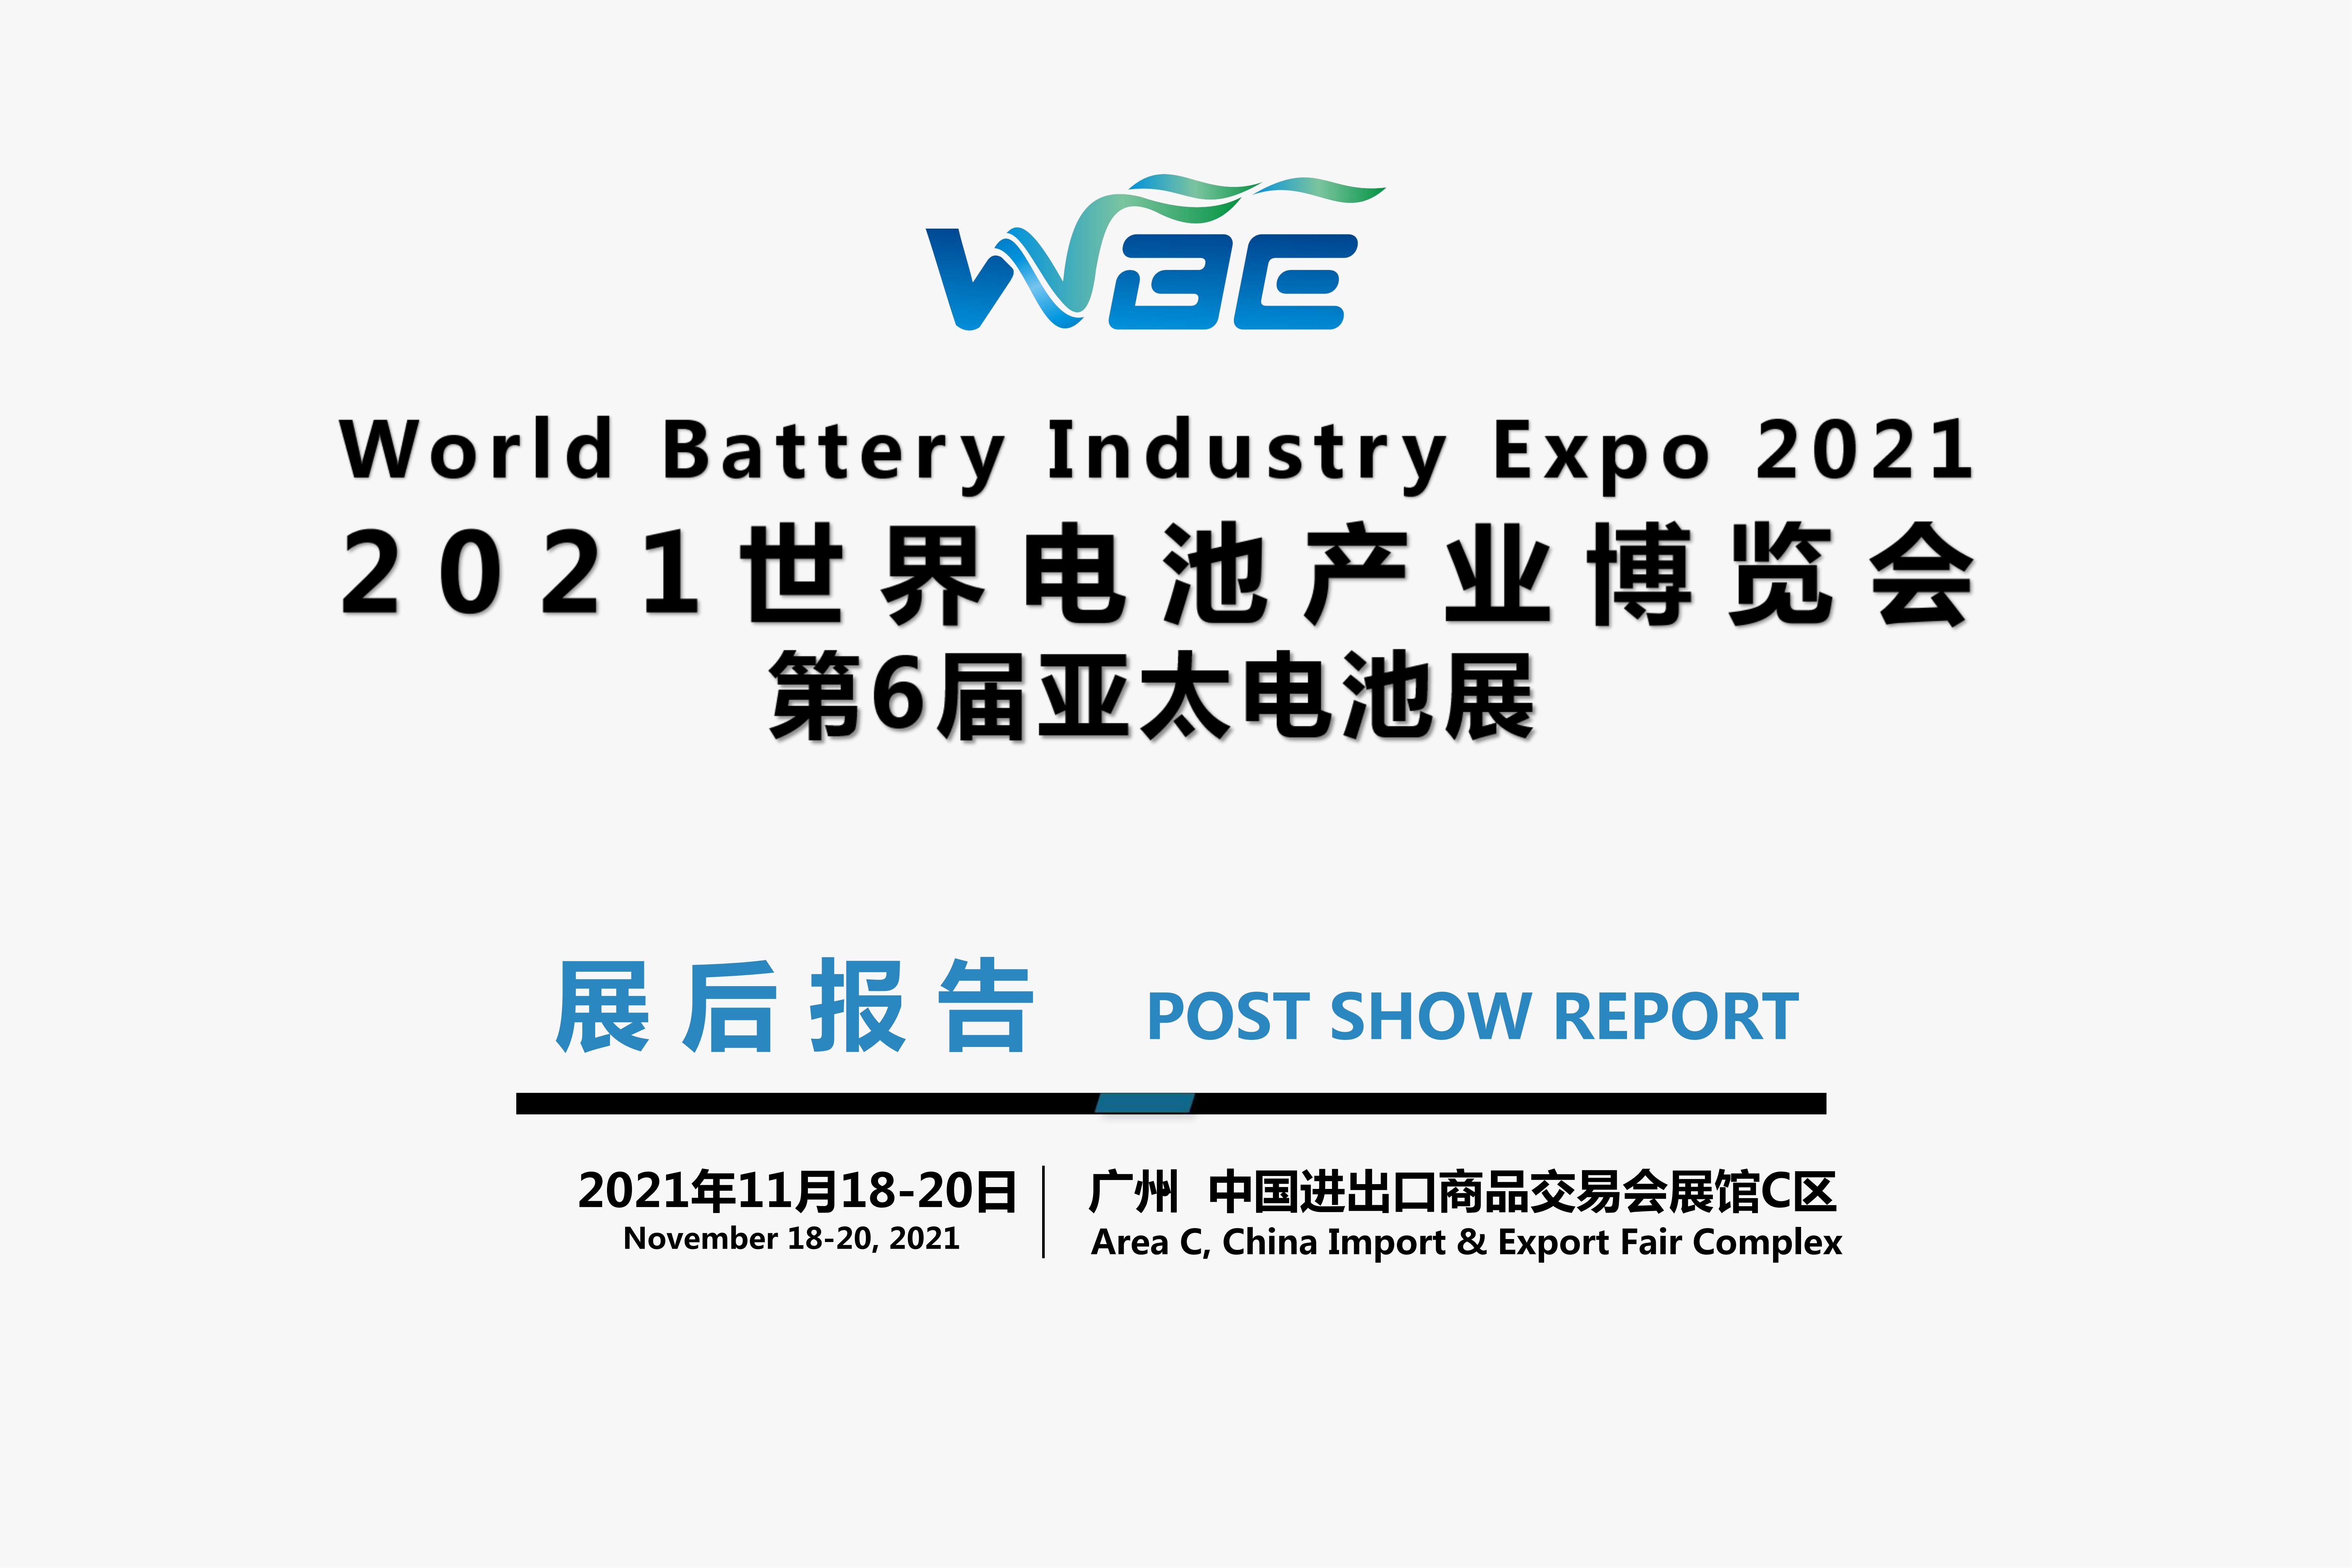 【展后报告】WBE2021世界电池产业博览会暨第六届亚太电池展